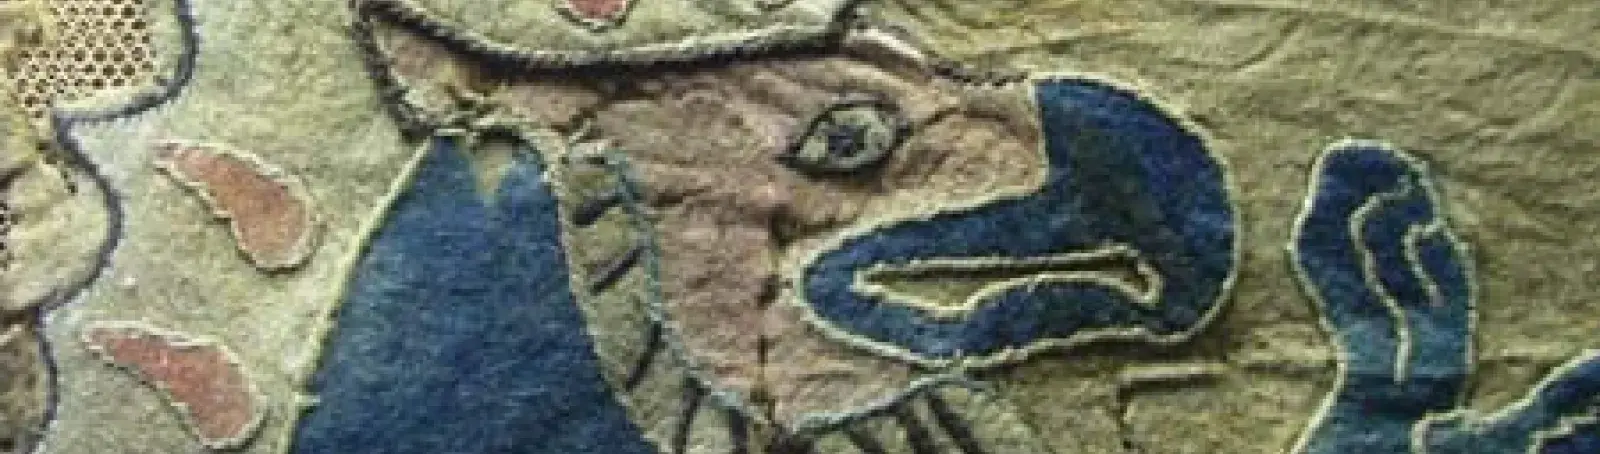 11.&nbsp; kép: Rátét, zsinórozás és bőr együttes alkalmazása szkíta nemeztakarón, ie. 5 század, Ermitázs